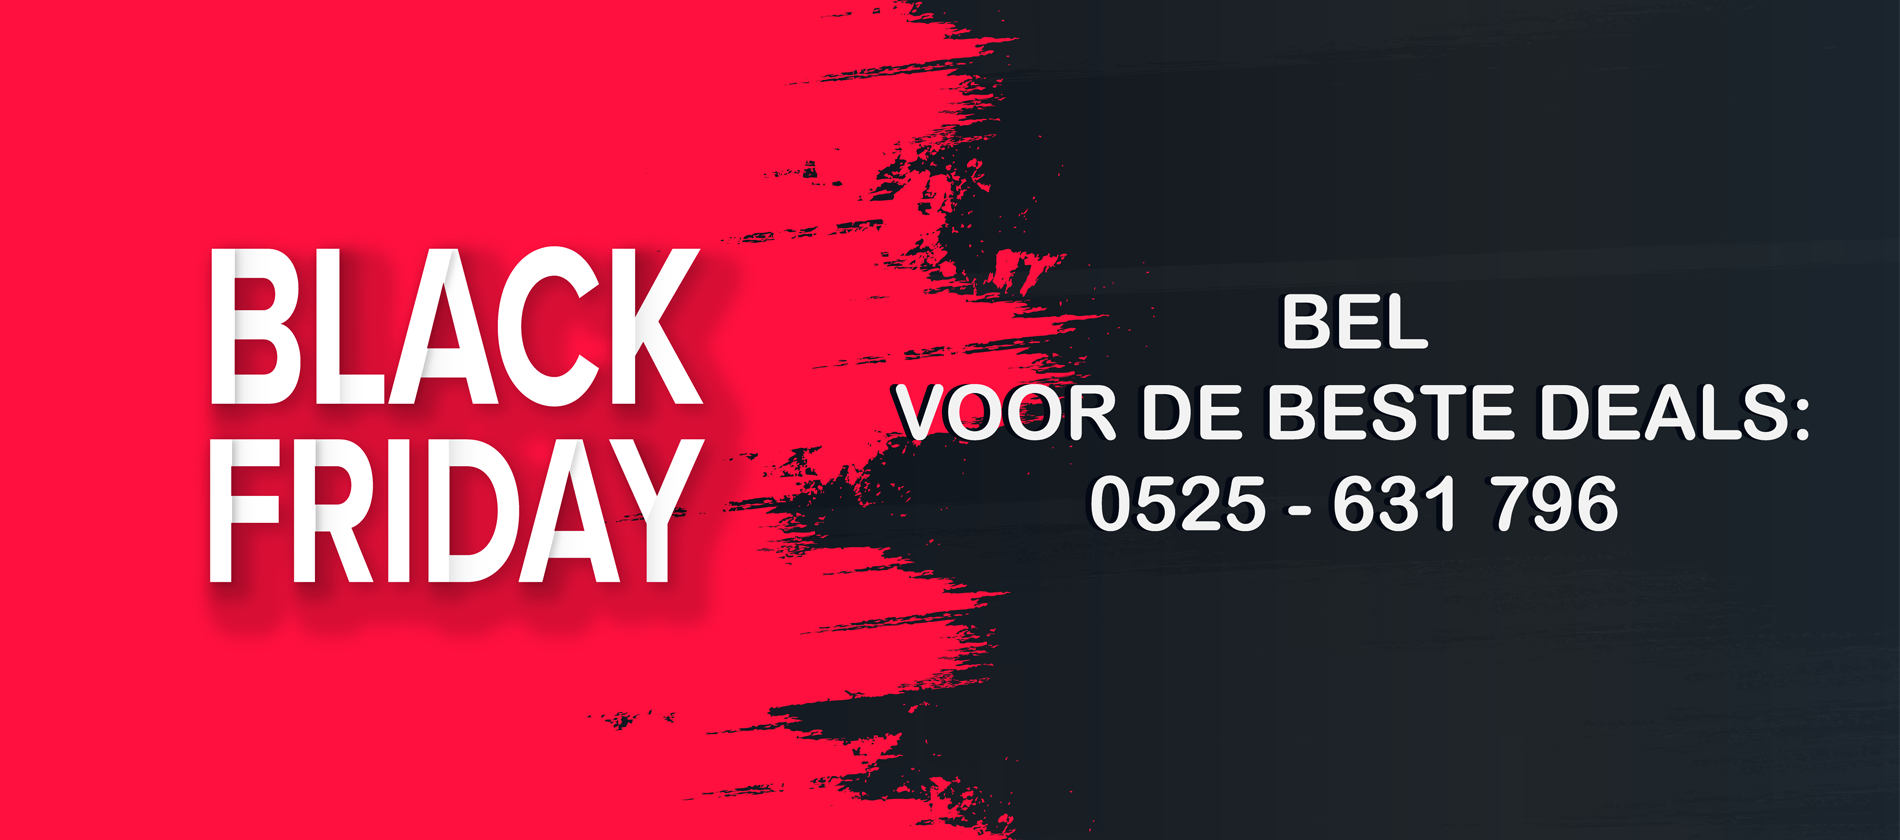 black-friday-deals-banner